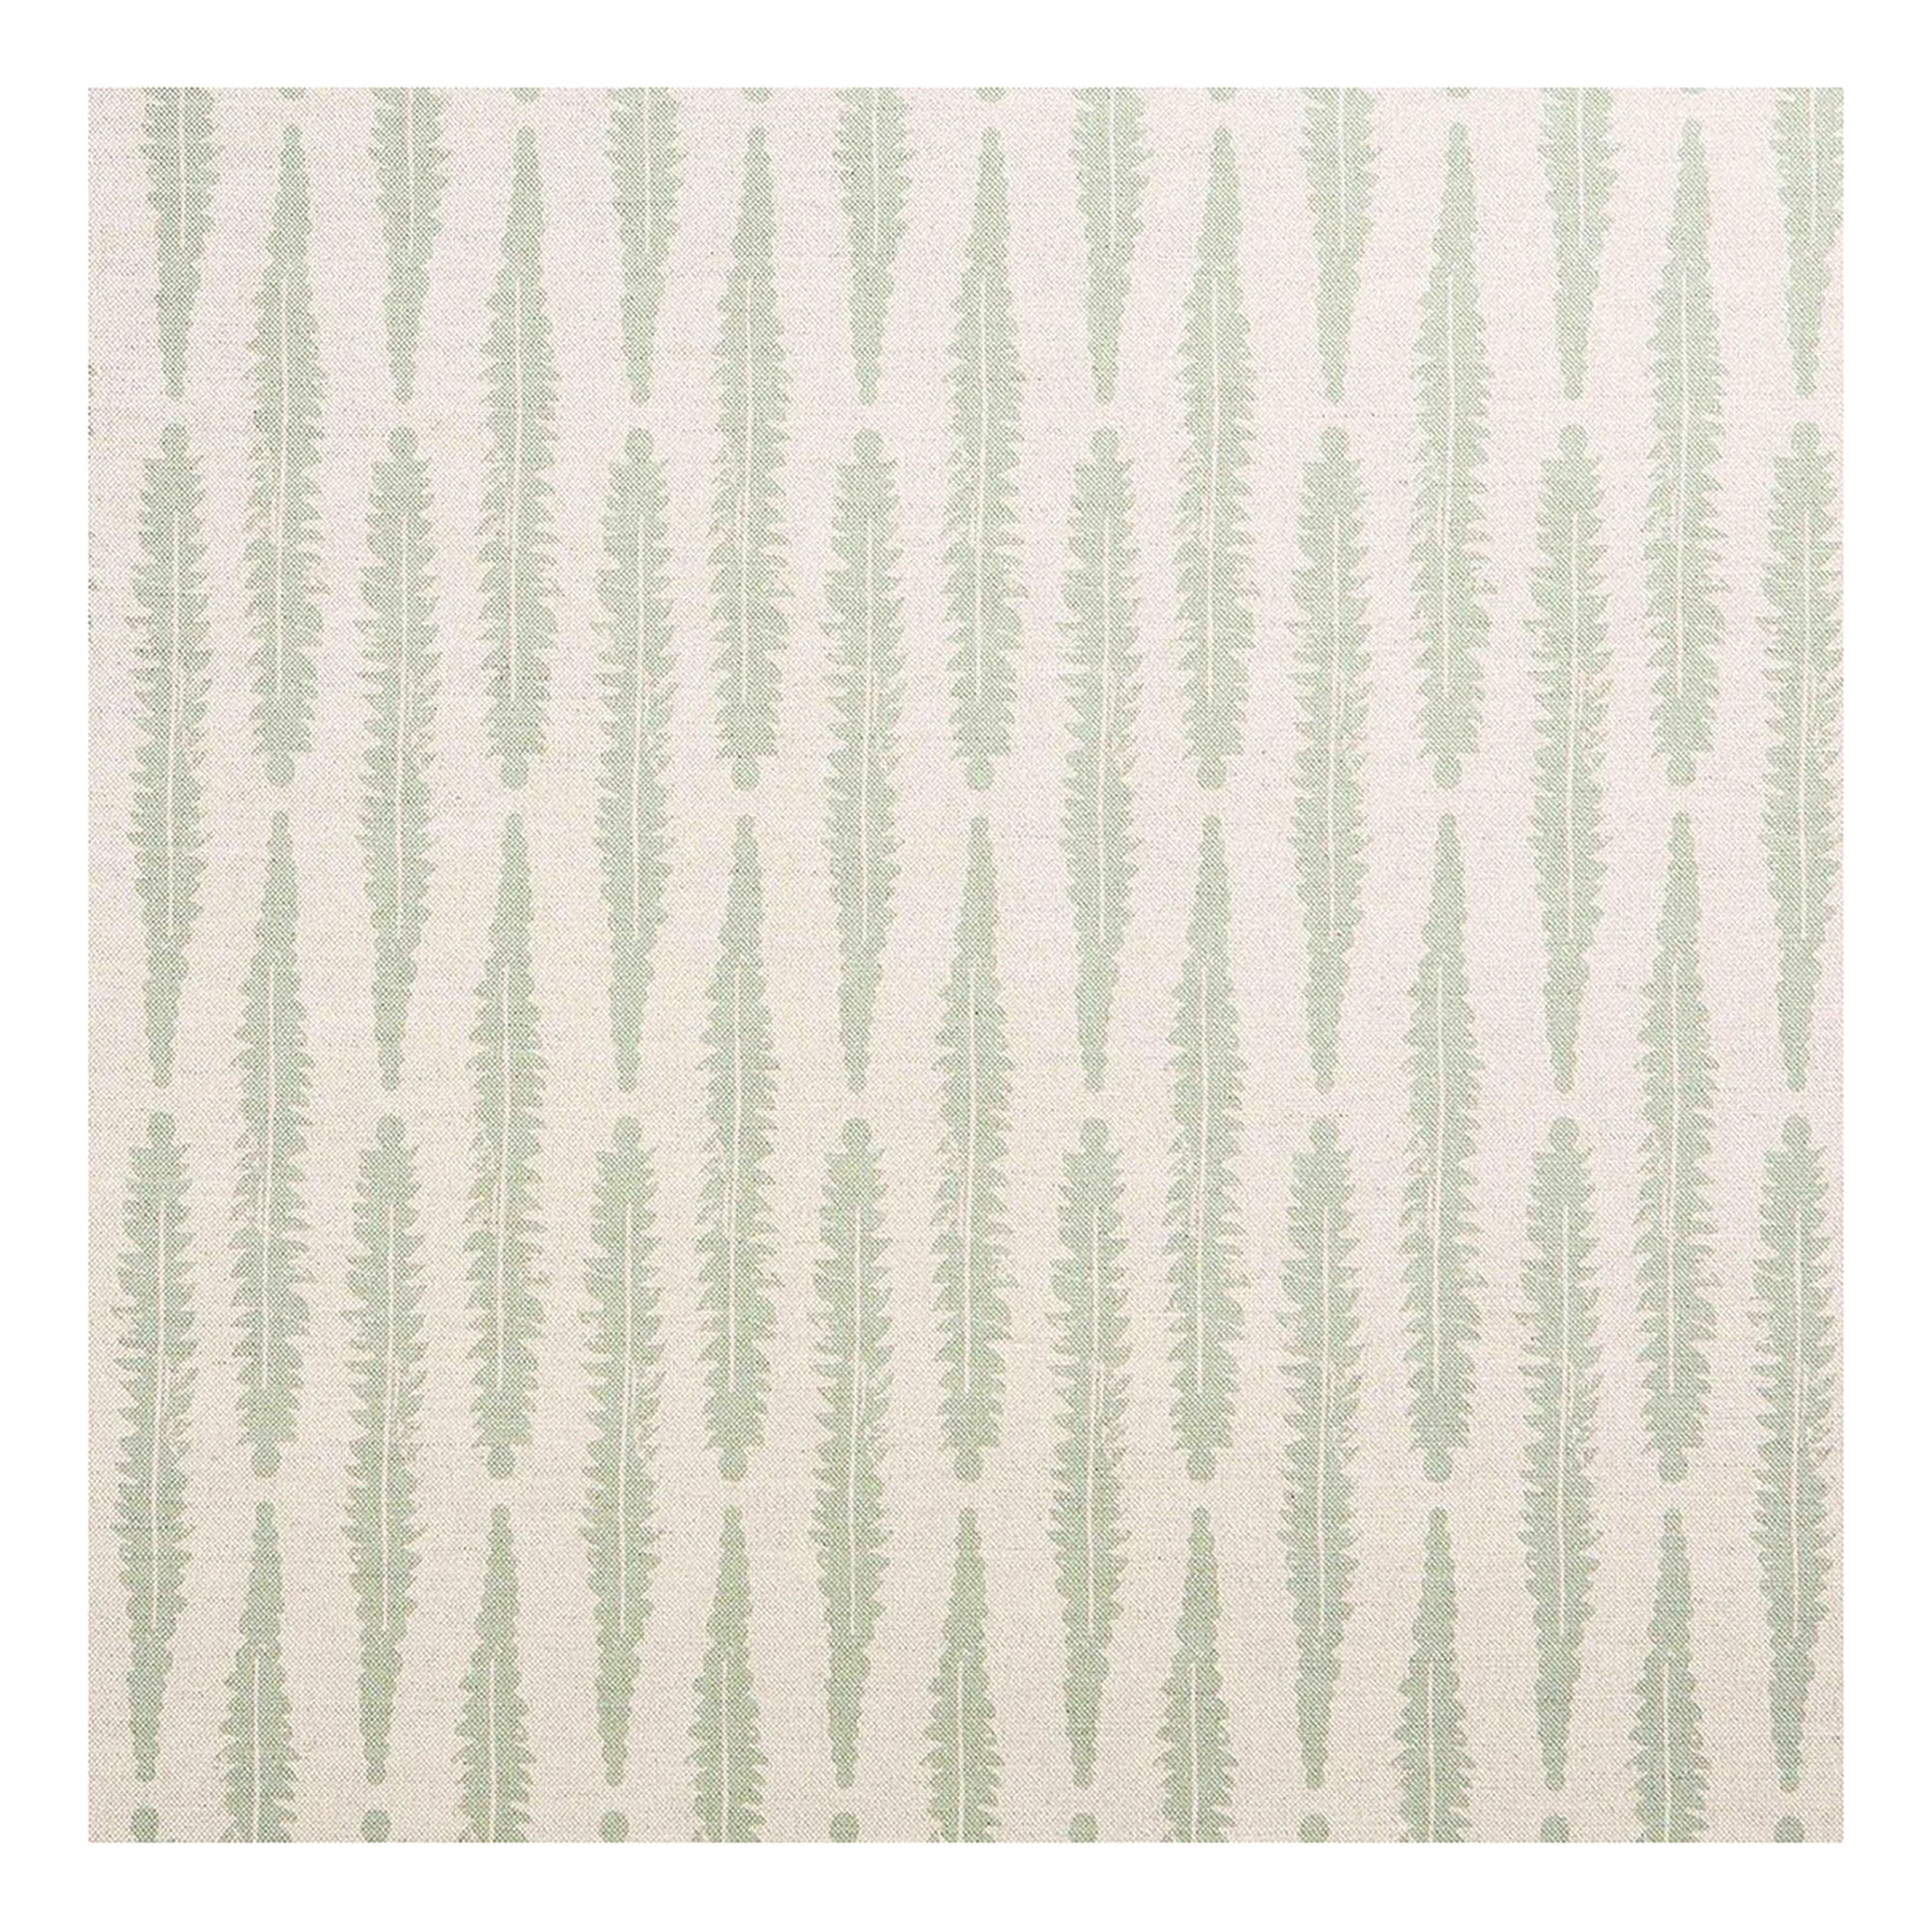 Fern Printed Fabric Linen/Cotton Lichen